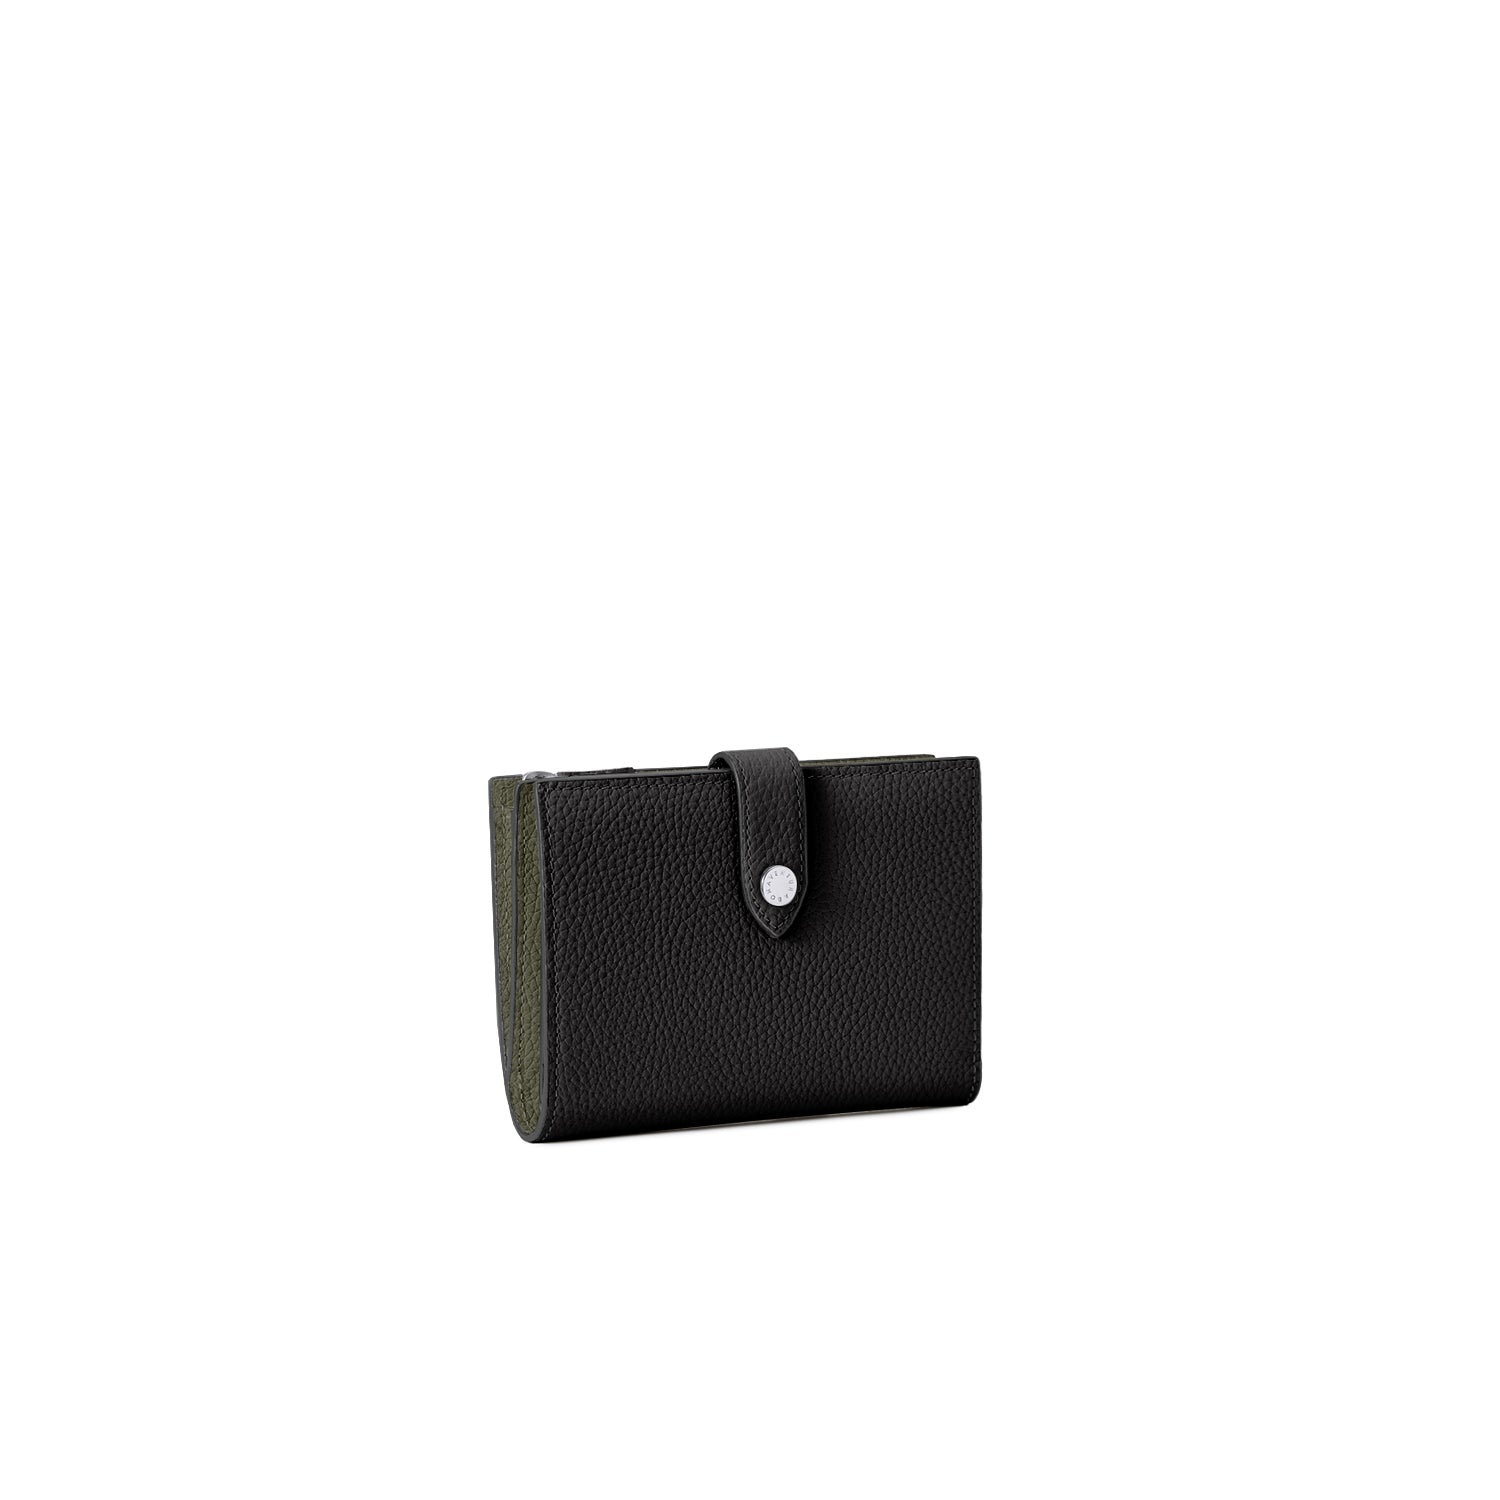 上質なレザーの二つ折り財布 – イタリア(ミラノ)発の高級革製品の通販